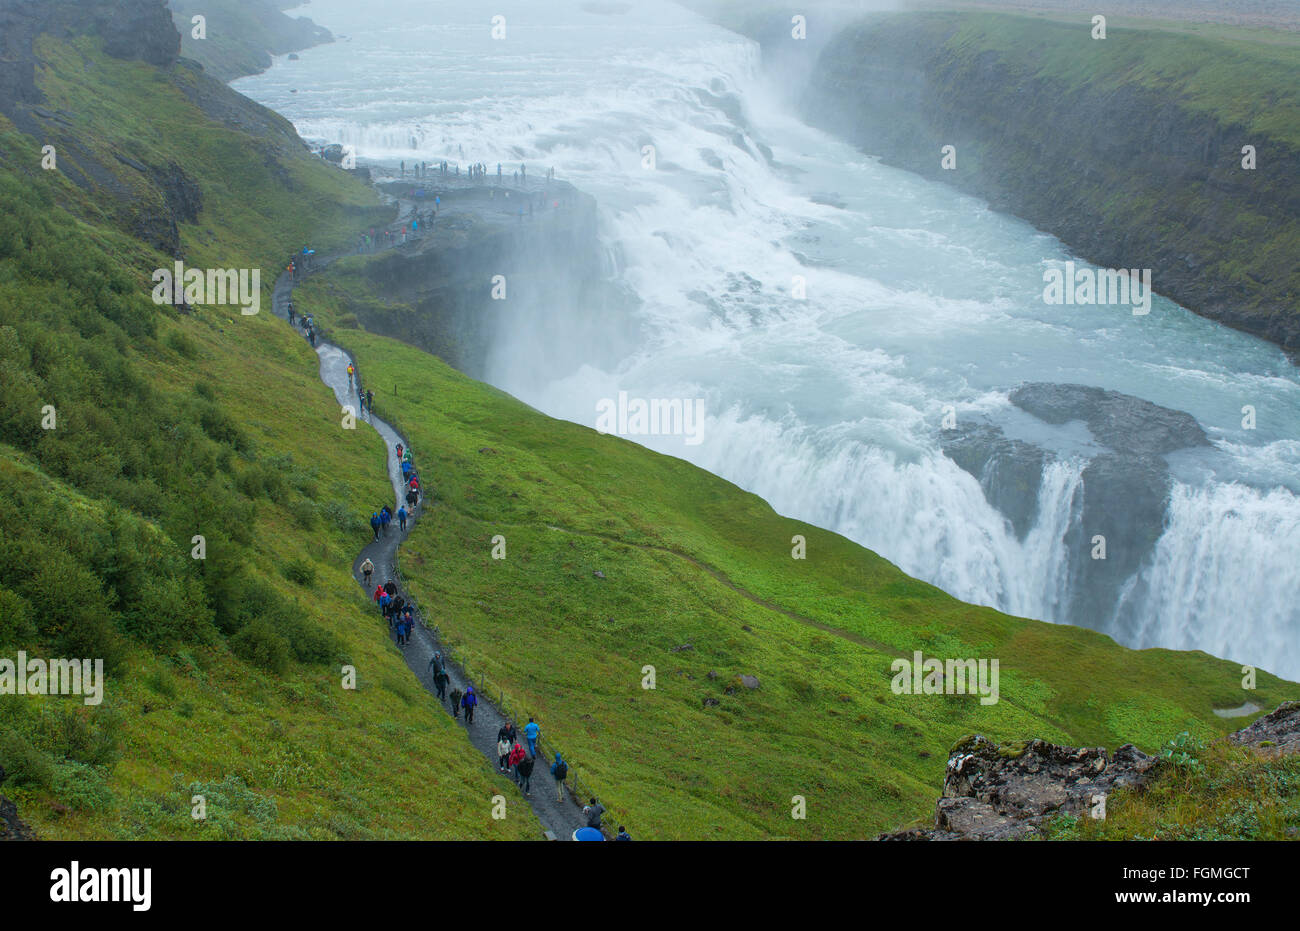 L'Islande Gullfoss Falls sur la rivière Hvita du dessus avec les touristes marcher sur le sentier dans la brume des chutes d'eau tombe dans le sud-ouest de l'Icel Banque D'Images